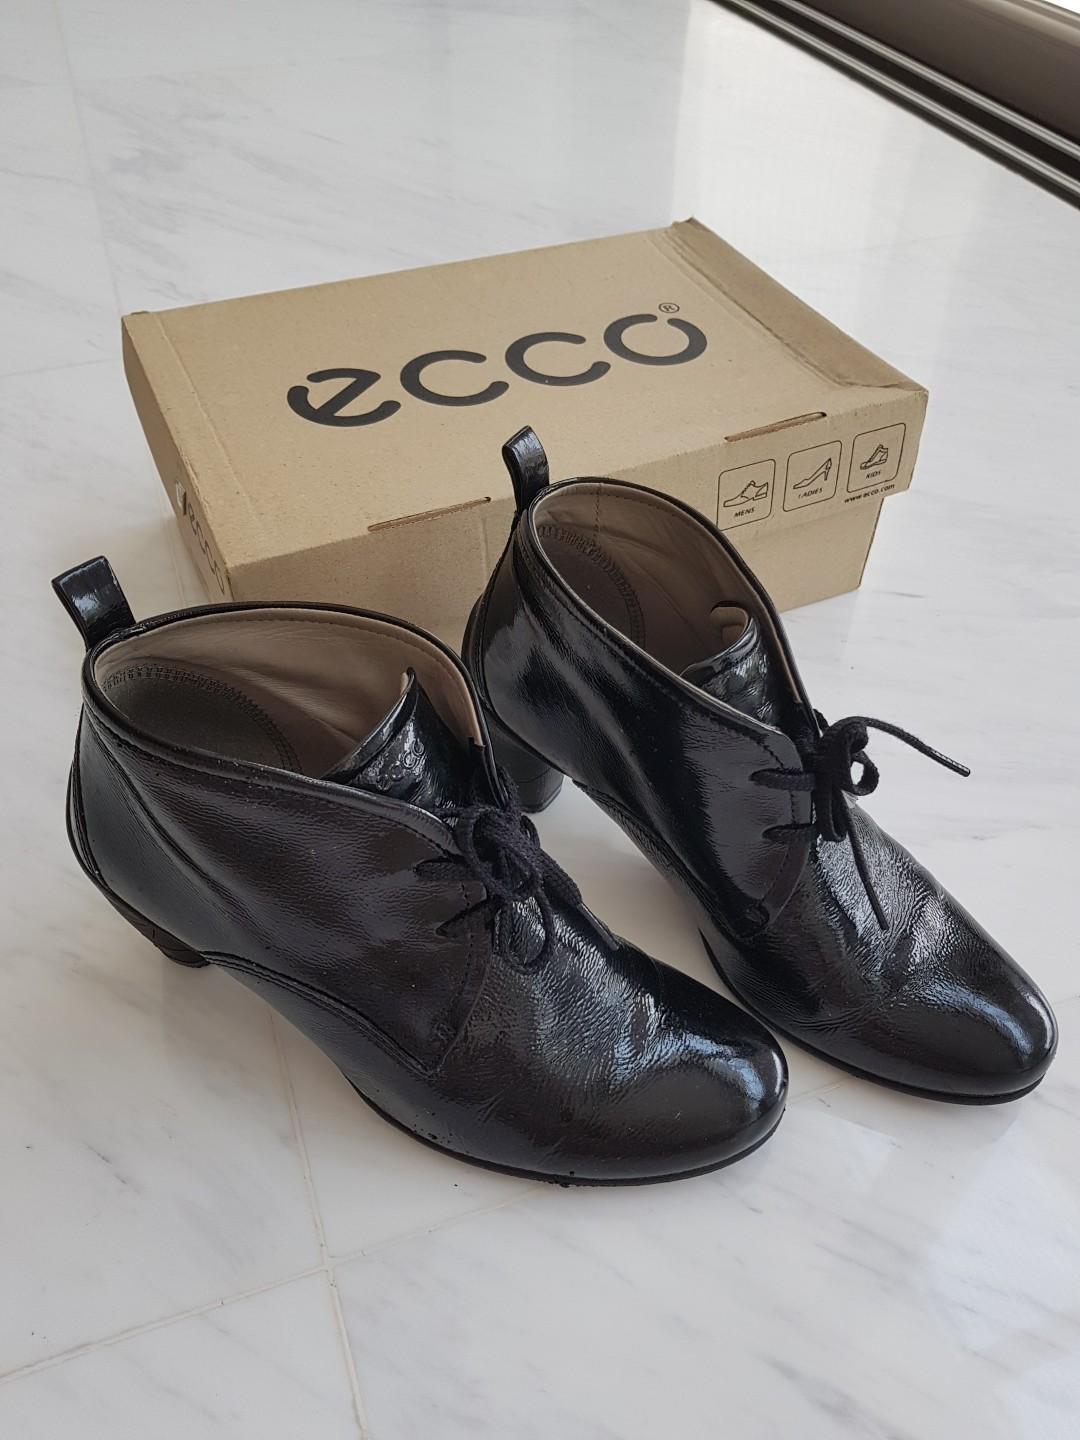 Ecco booties, Women's Fashion, Shoes 